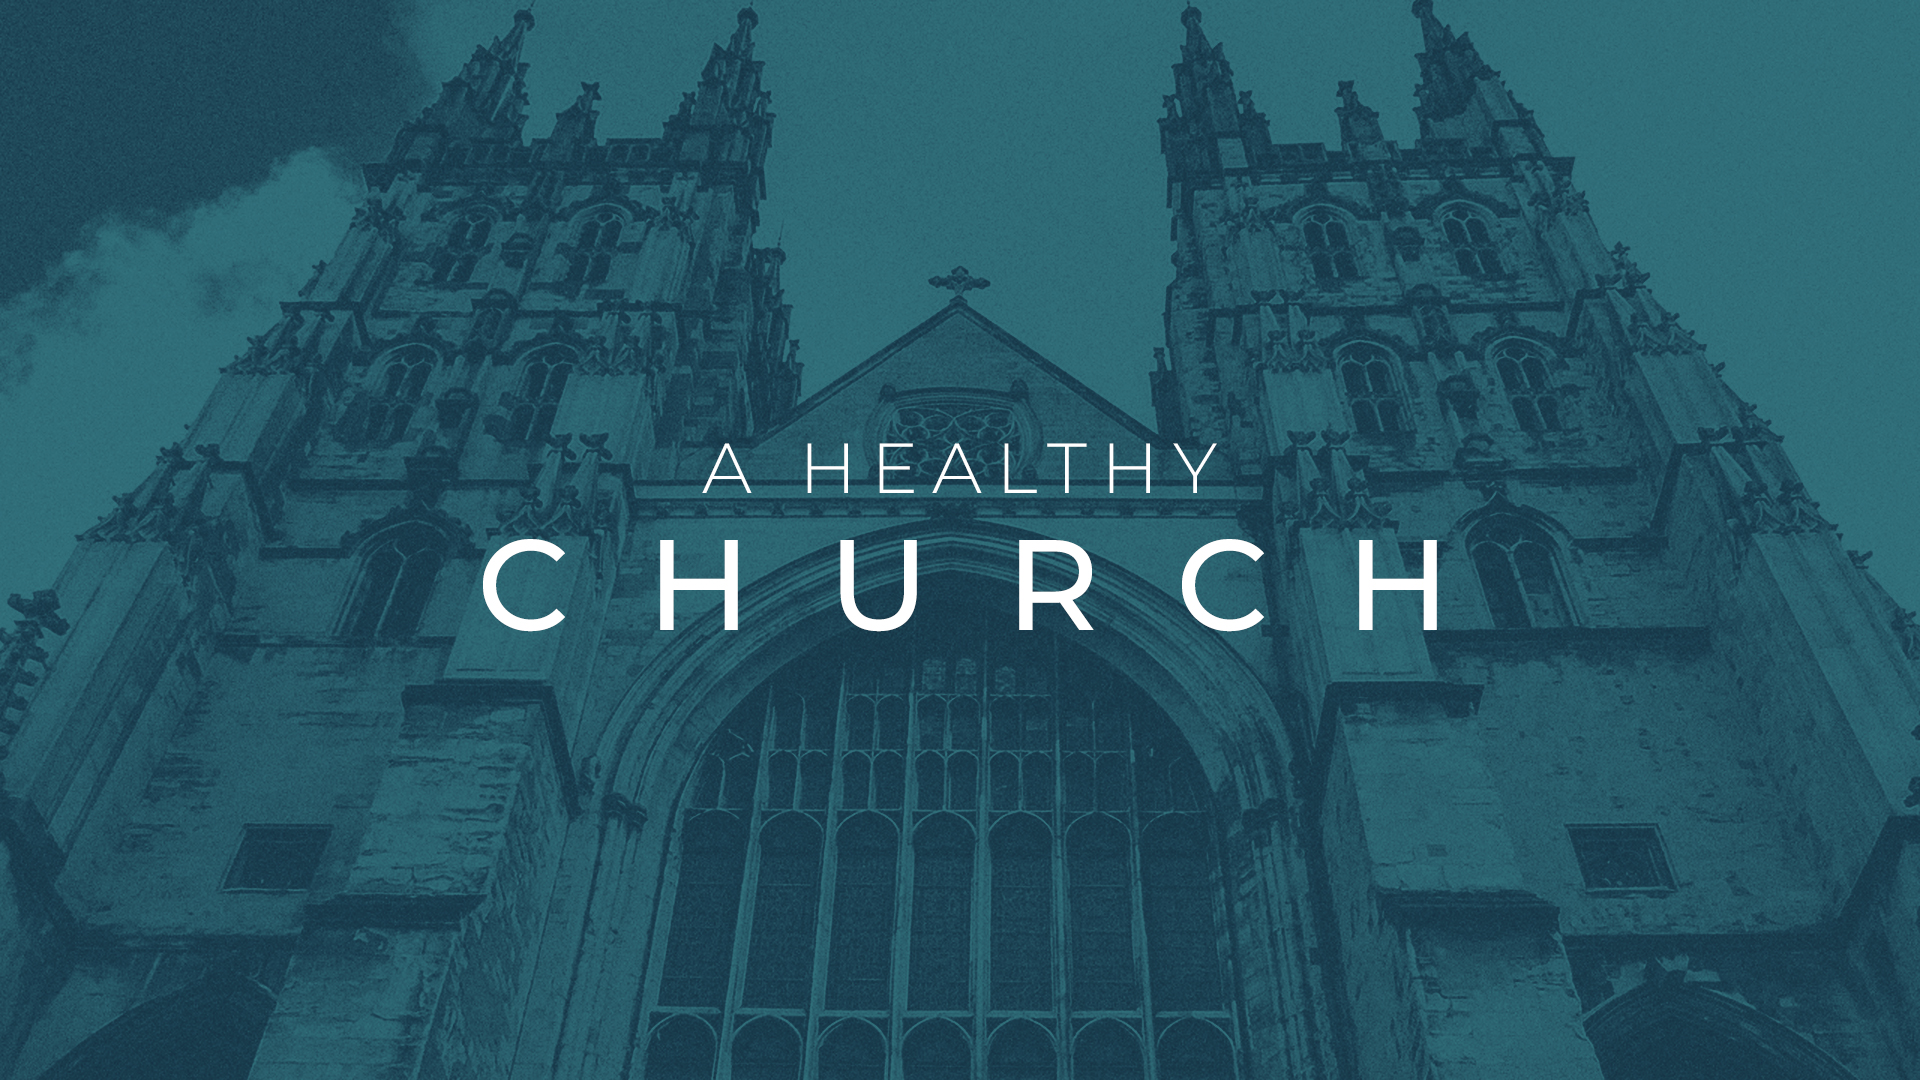 A Healthy Church Graphic